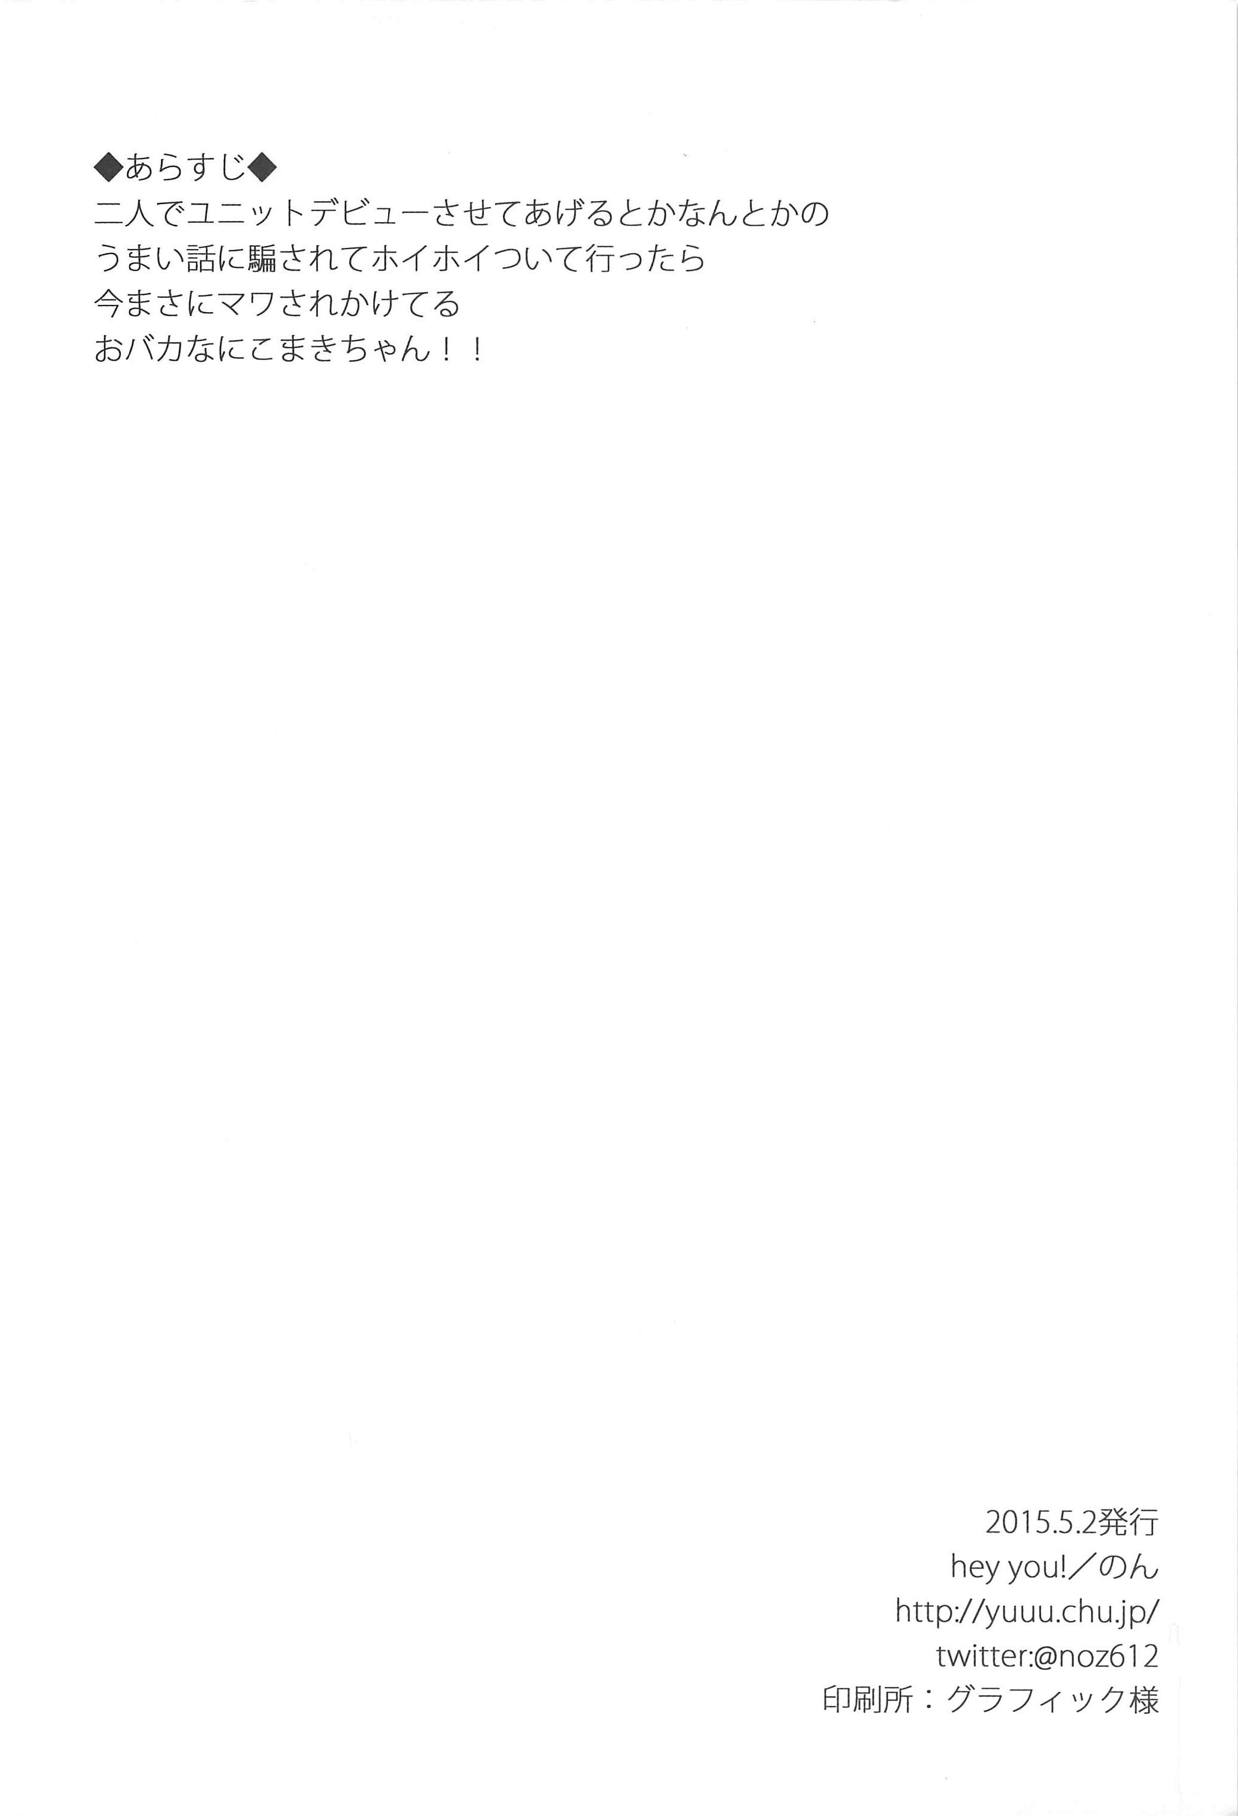 (COMIC1☆9) [hey you! (のん)] モブおじさんとにこまきちゃん (ラブライブ!)